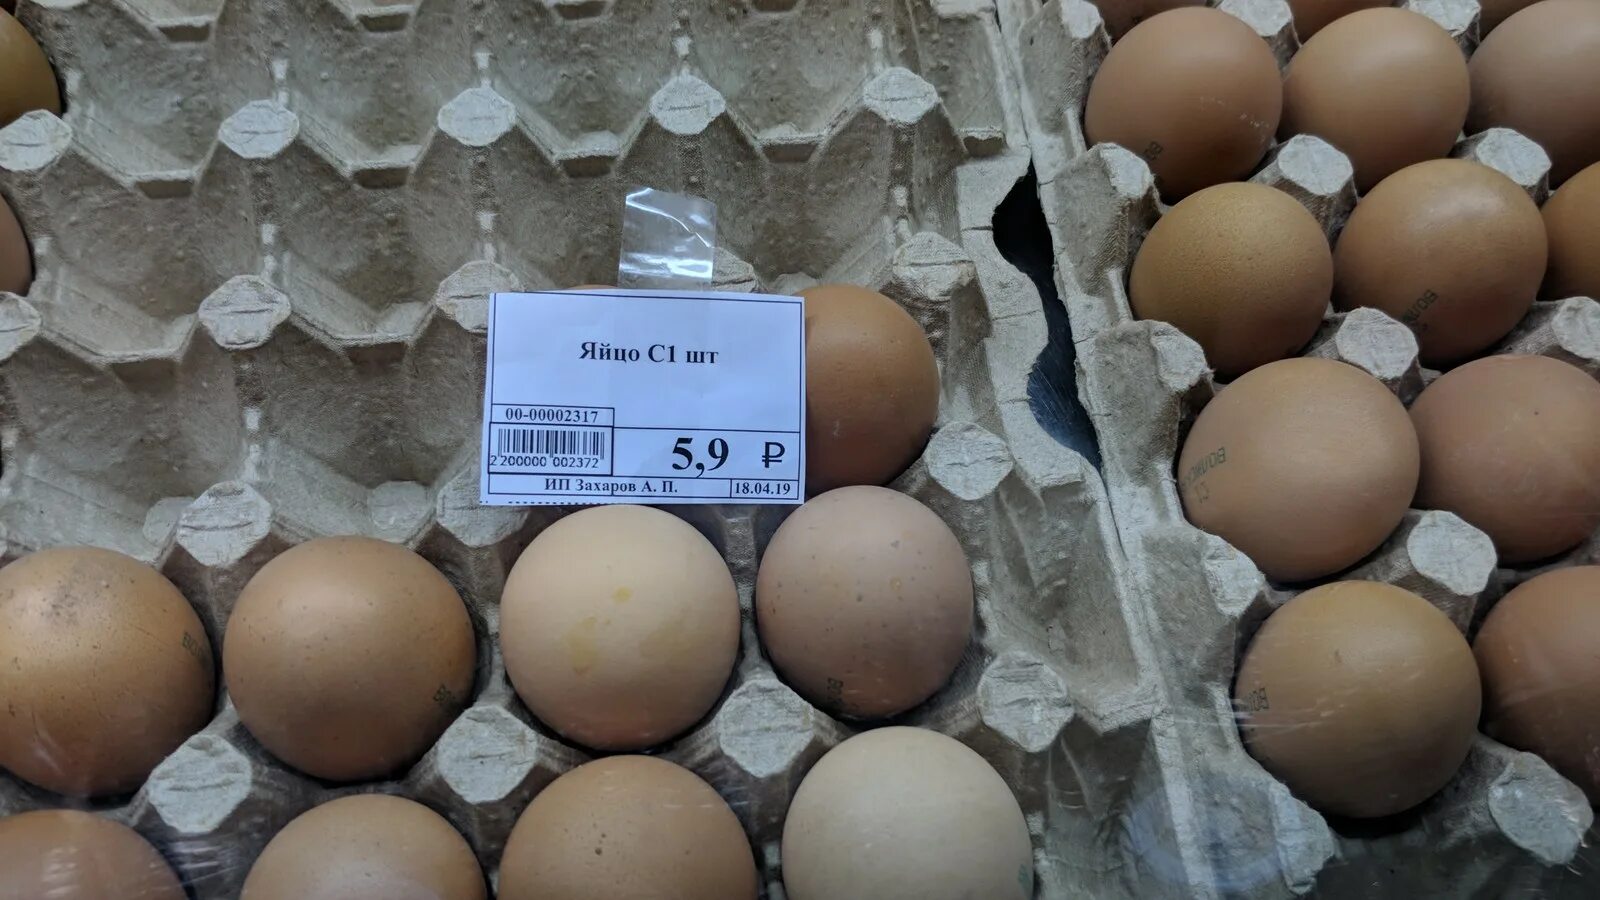 Купить яйцо в мордовии. Яйца поштучно. Запчасть яйца. Продаются яйца. Инфляция яиц.